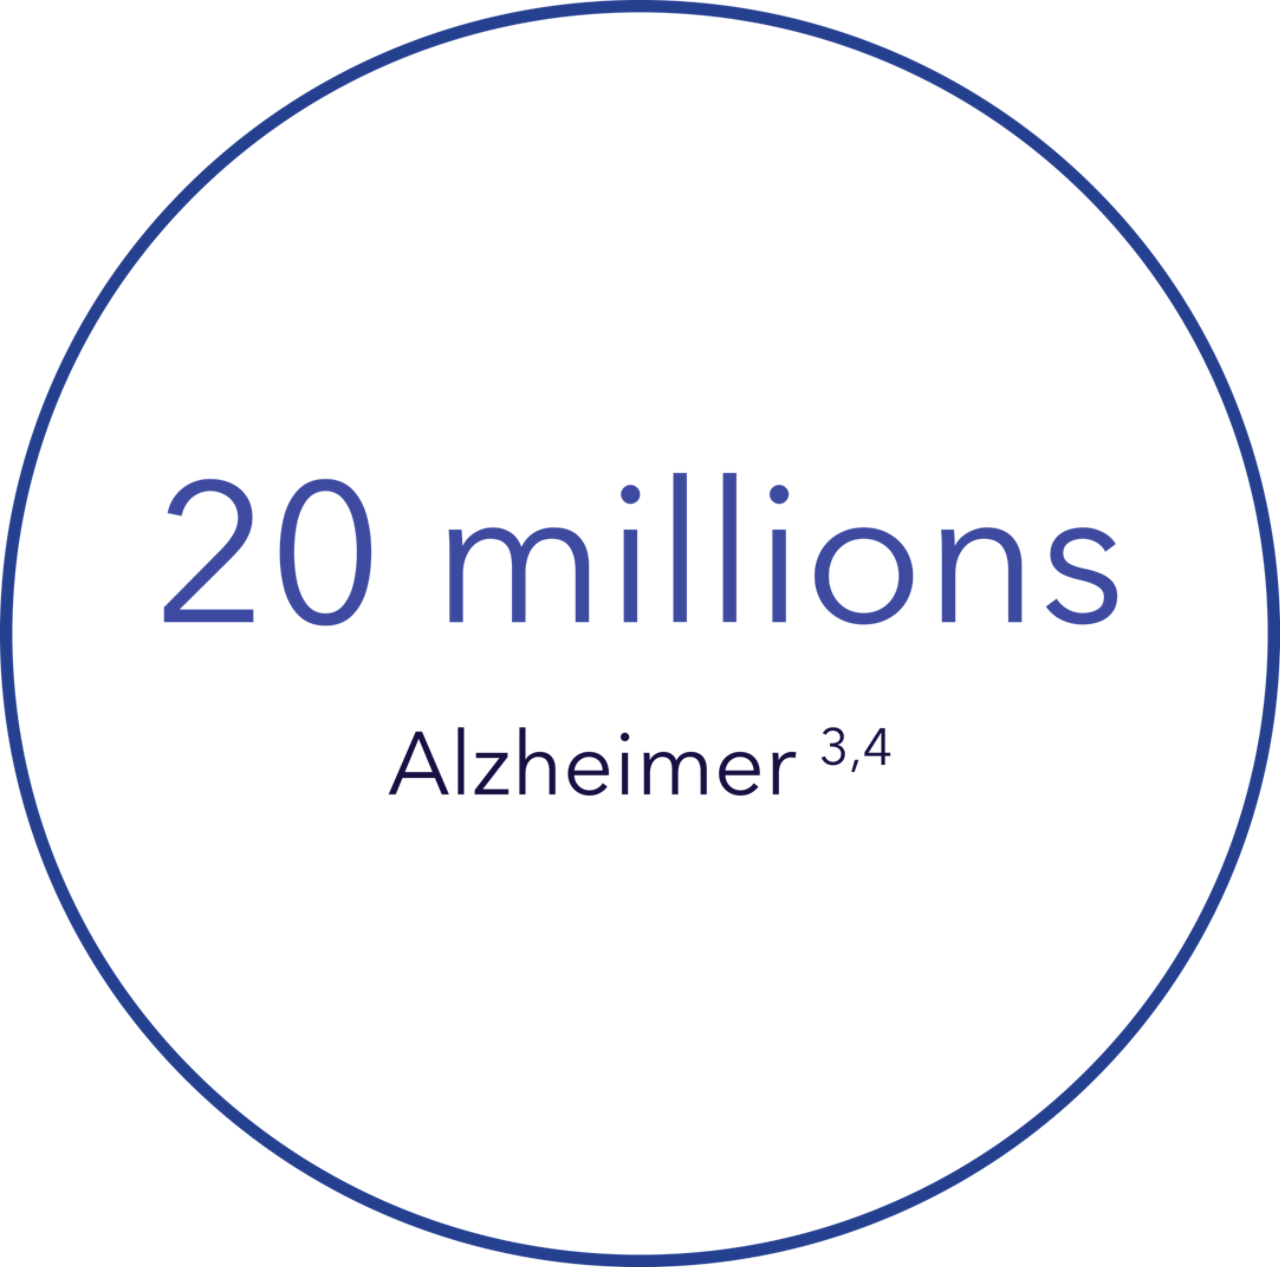 20-million-alzheimers-fr